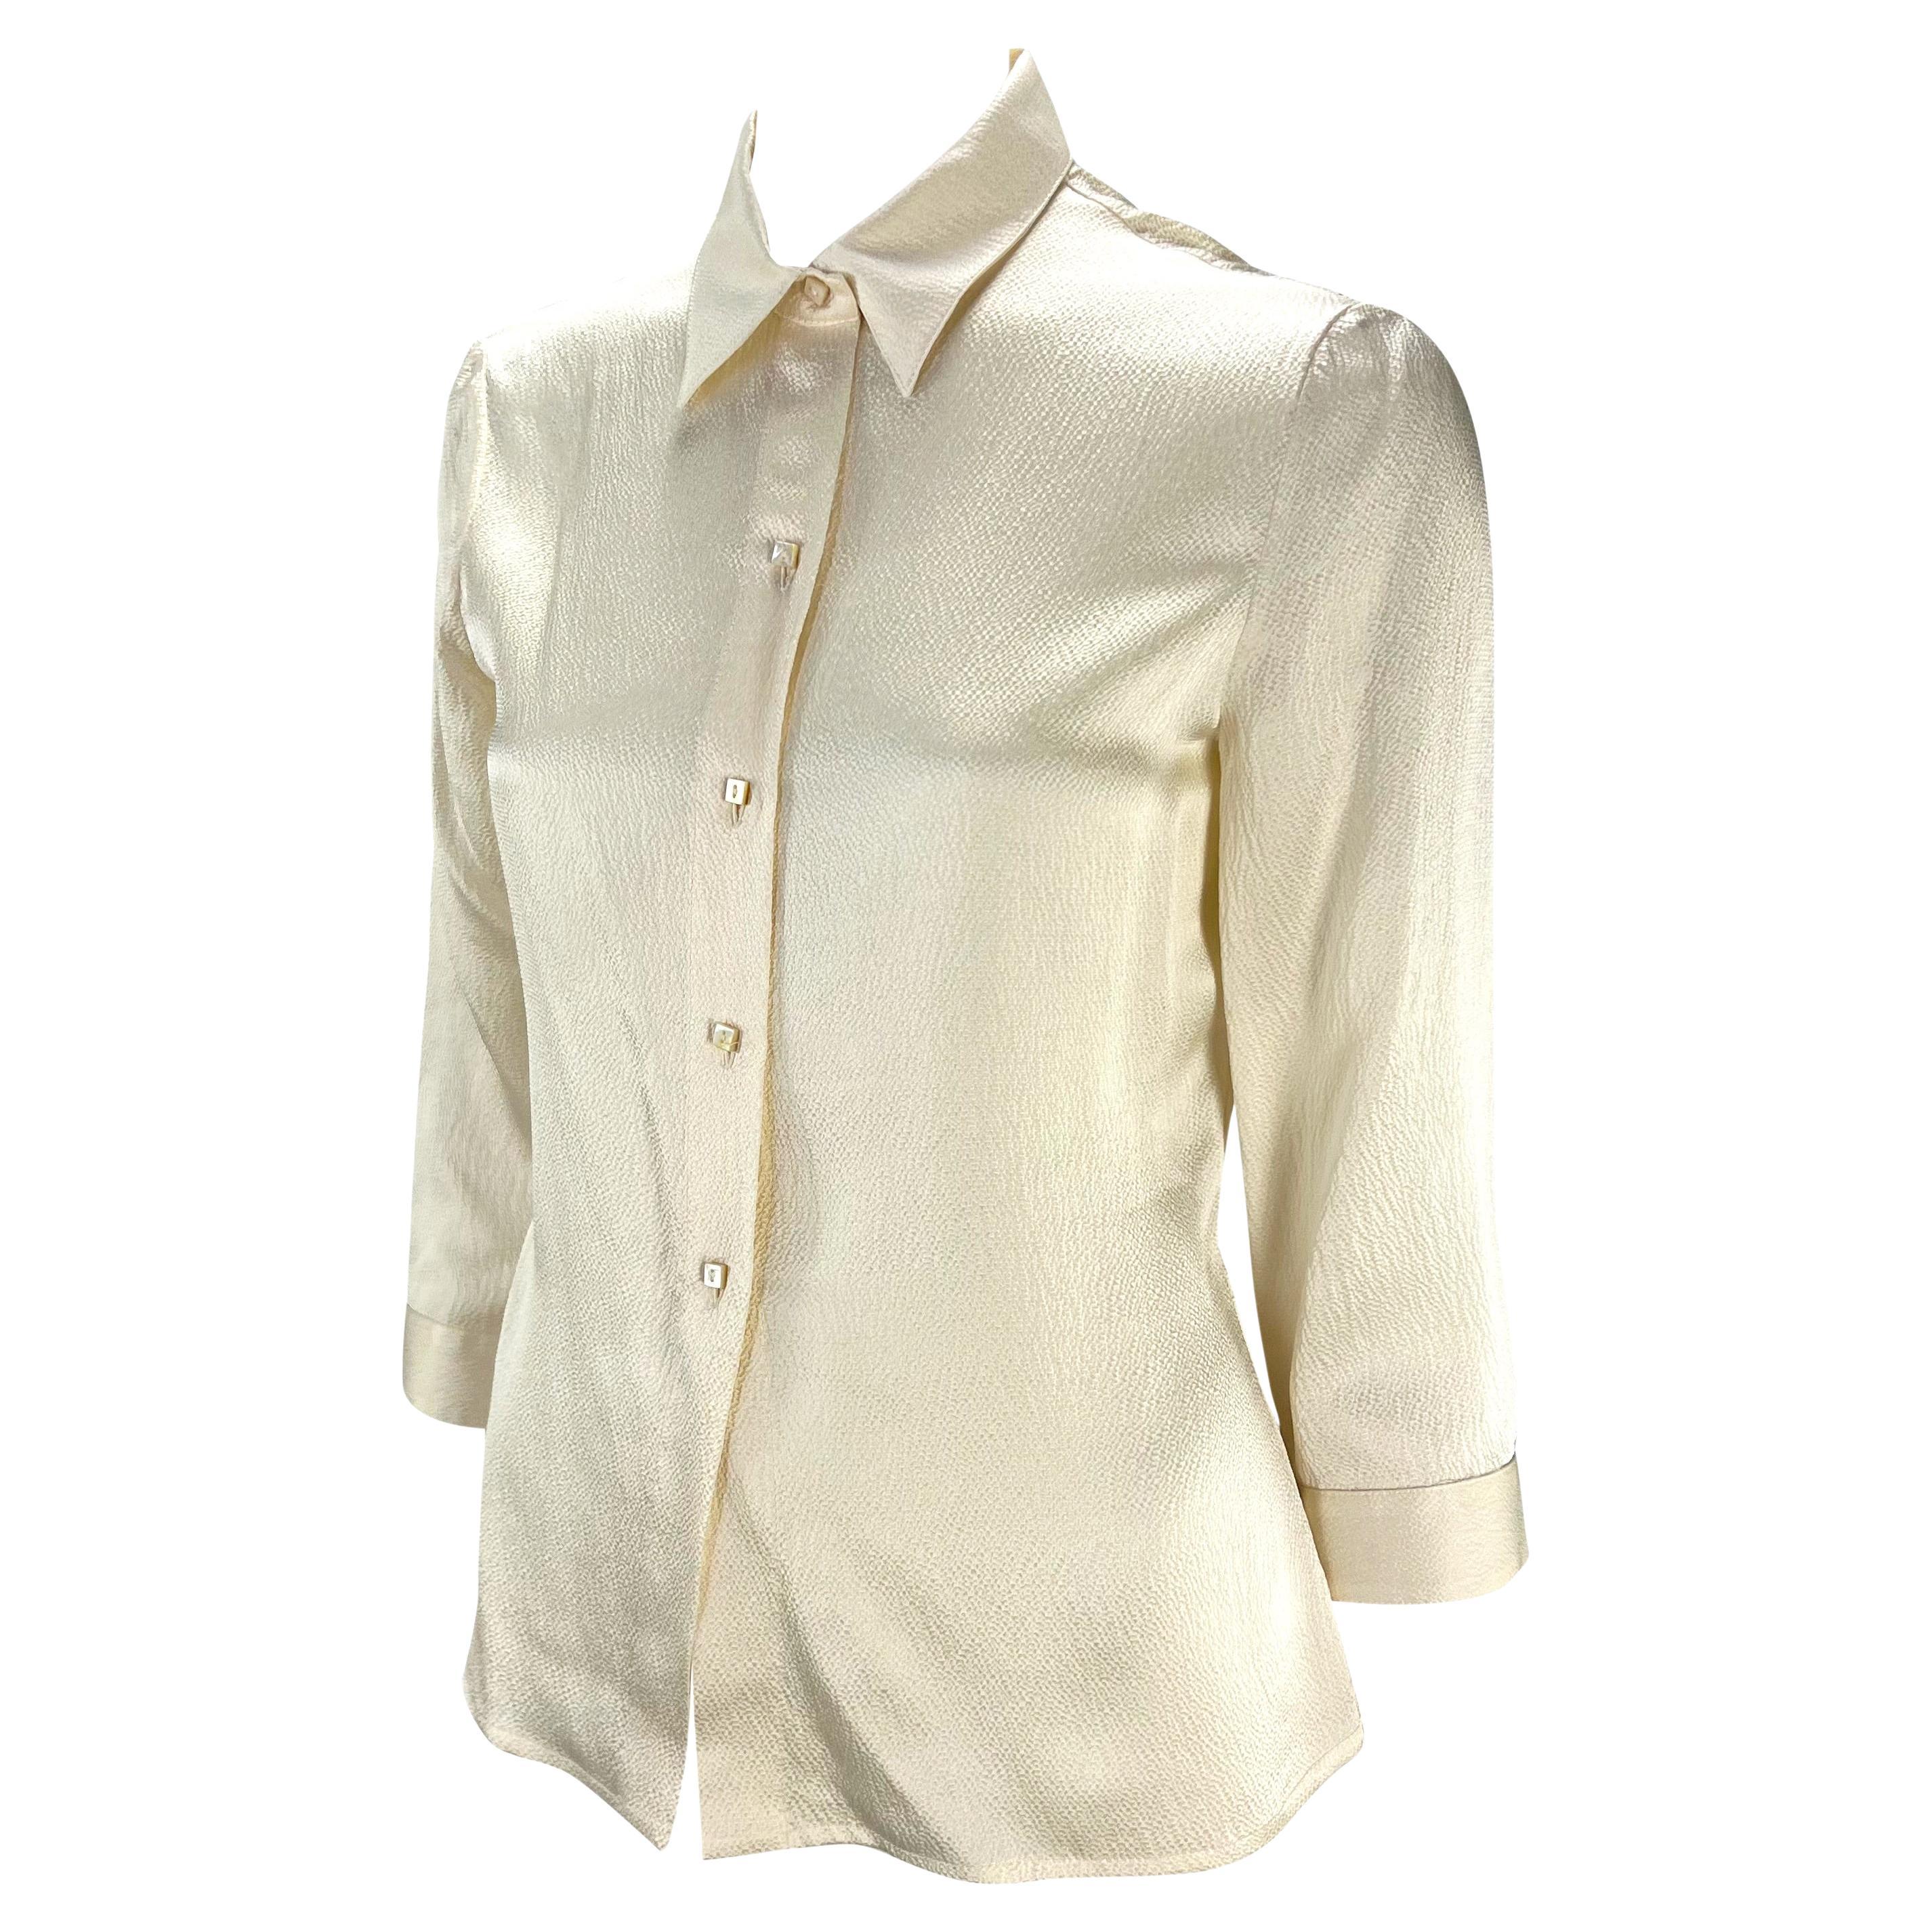 Collectional est une chemise à boutons en satin de crêpe conçue par Donatella pour la collection automne/hiver 1999 de Gianni Versace. Cette collection présentait de nombreuses formes de perles et de boutons similaires sur les podiums et dans les